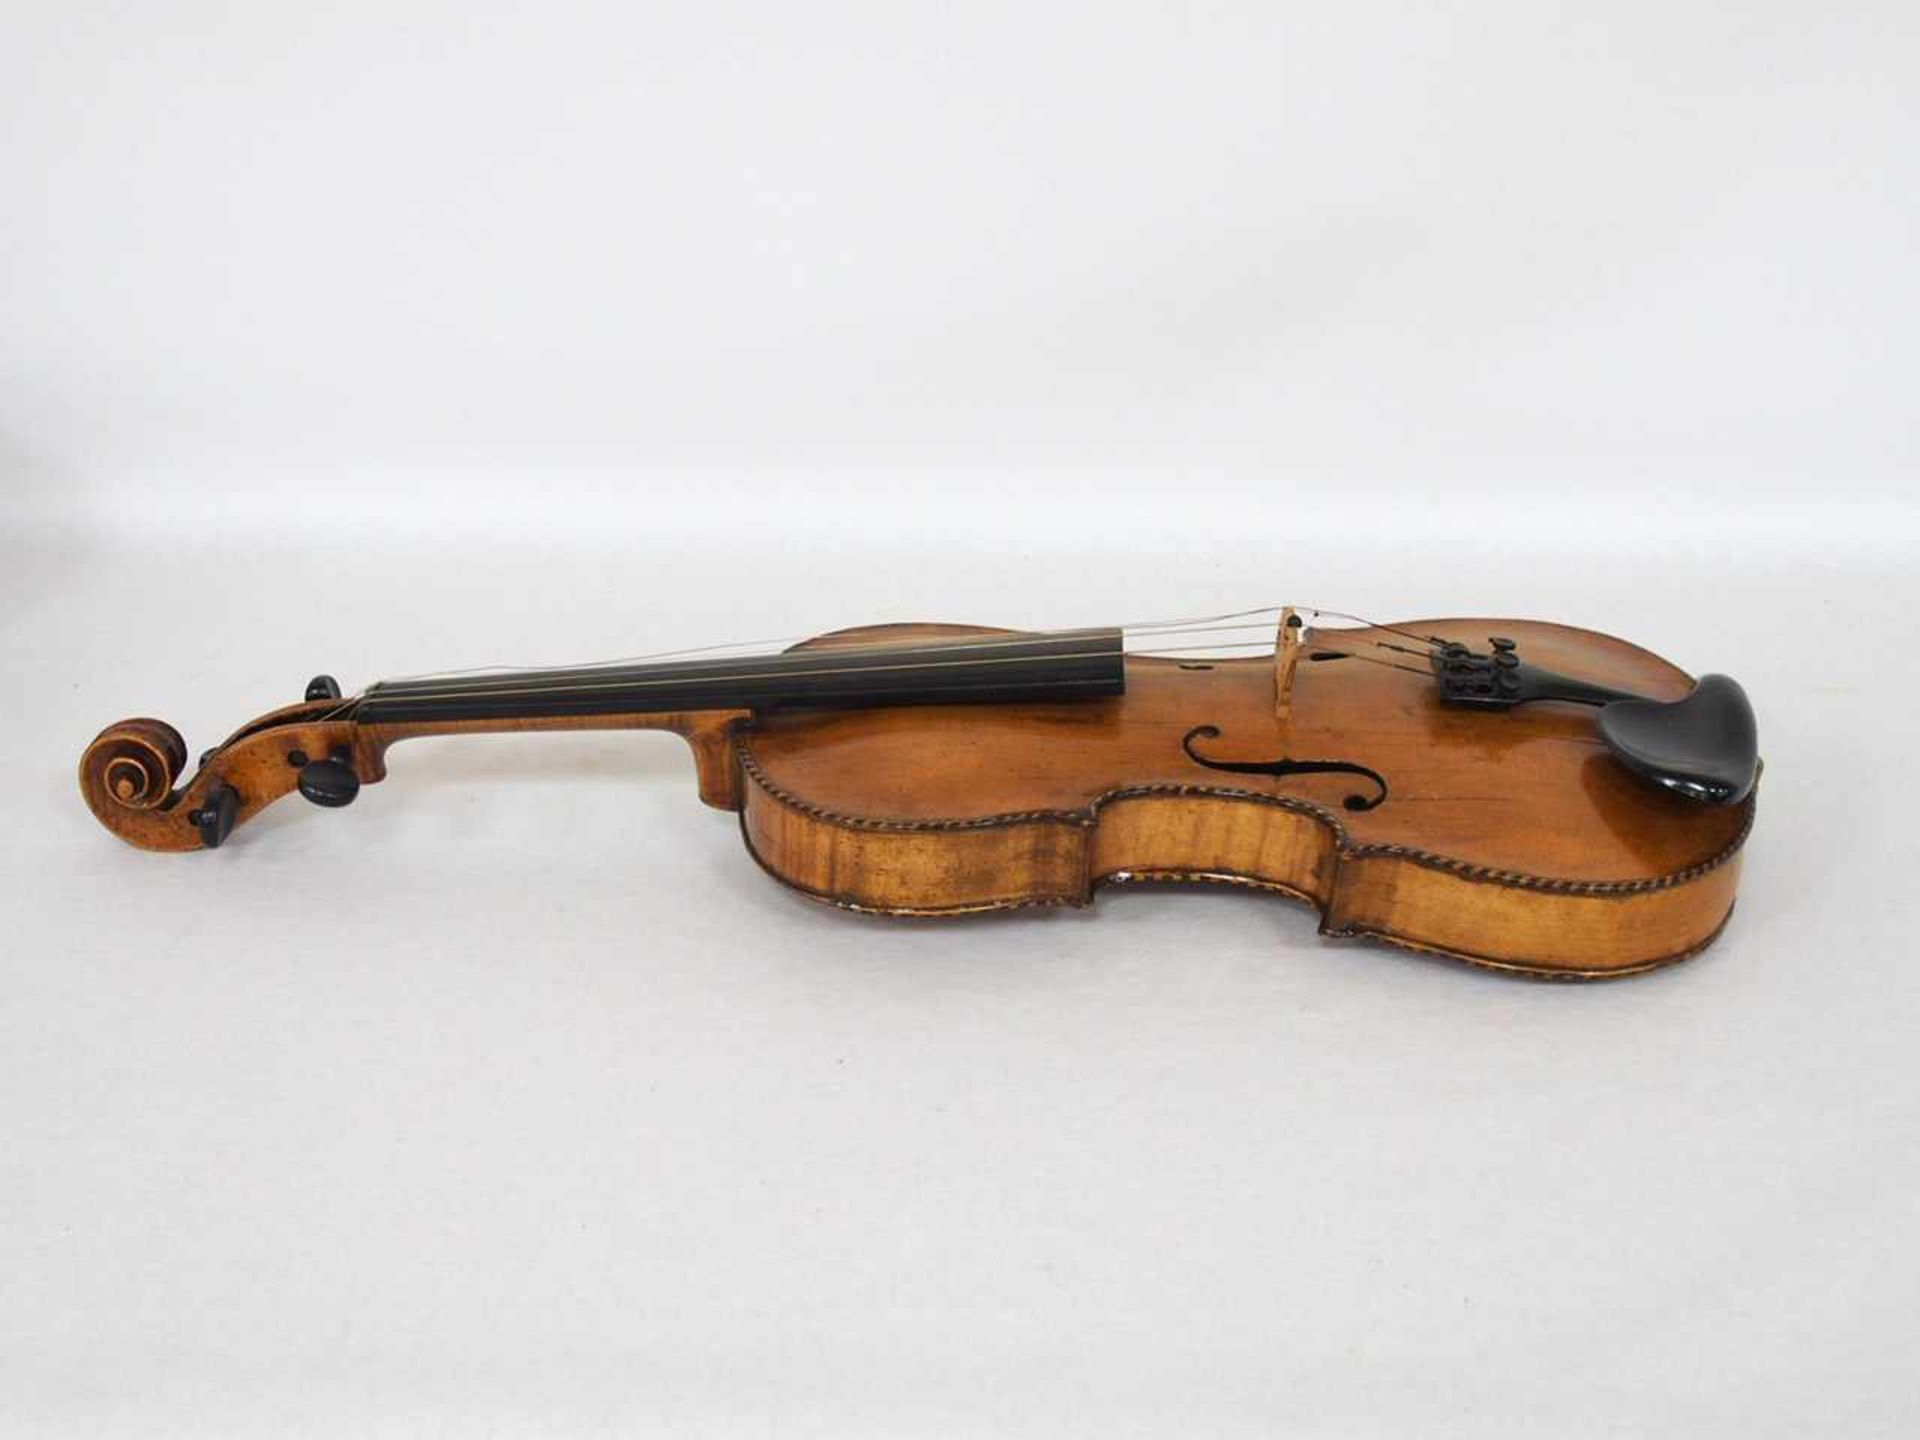 ViolineFichte (Decke), Ahorn (Zargen und Boden), Kopie nach Stradivari, Deutsch 19. Jahrhundert, - Bild 4 aus 6